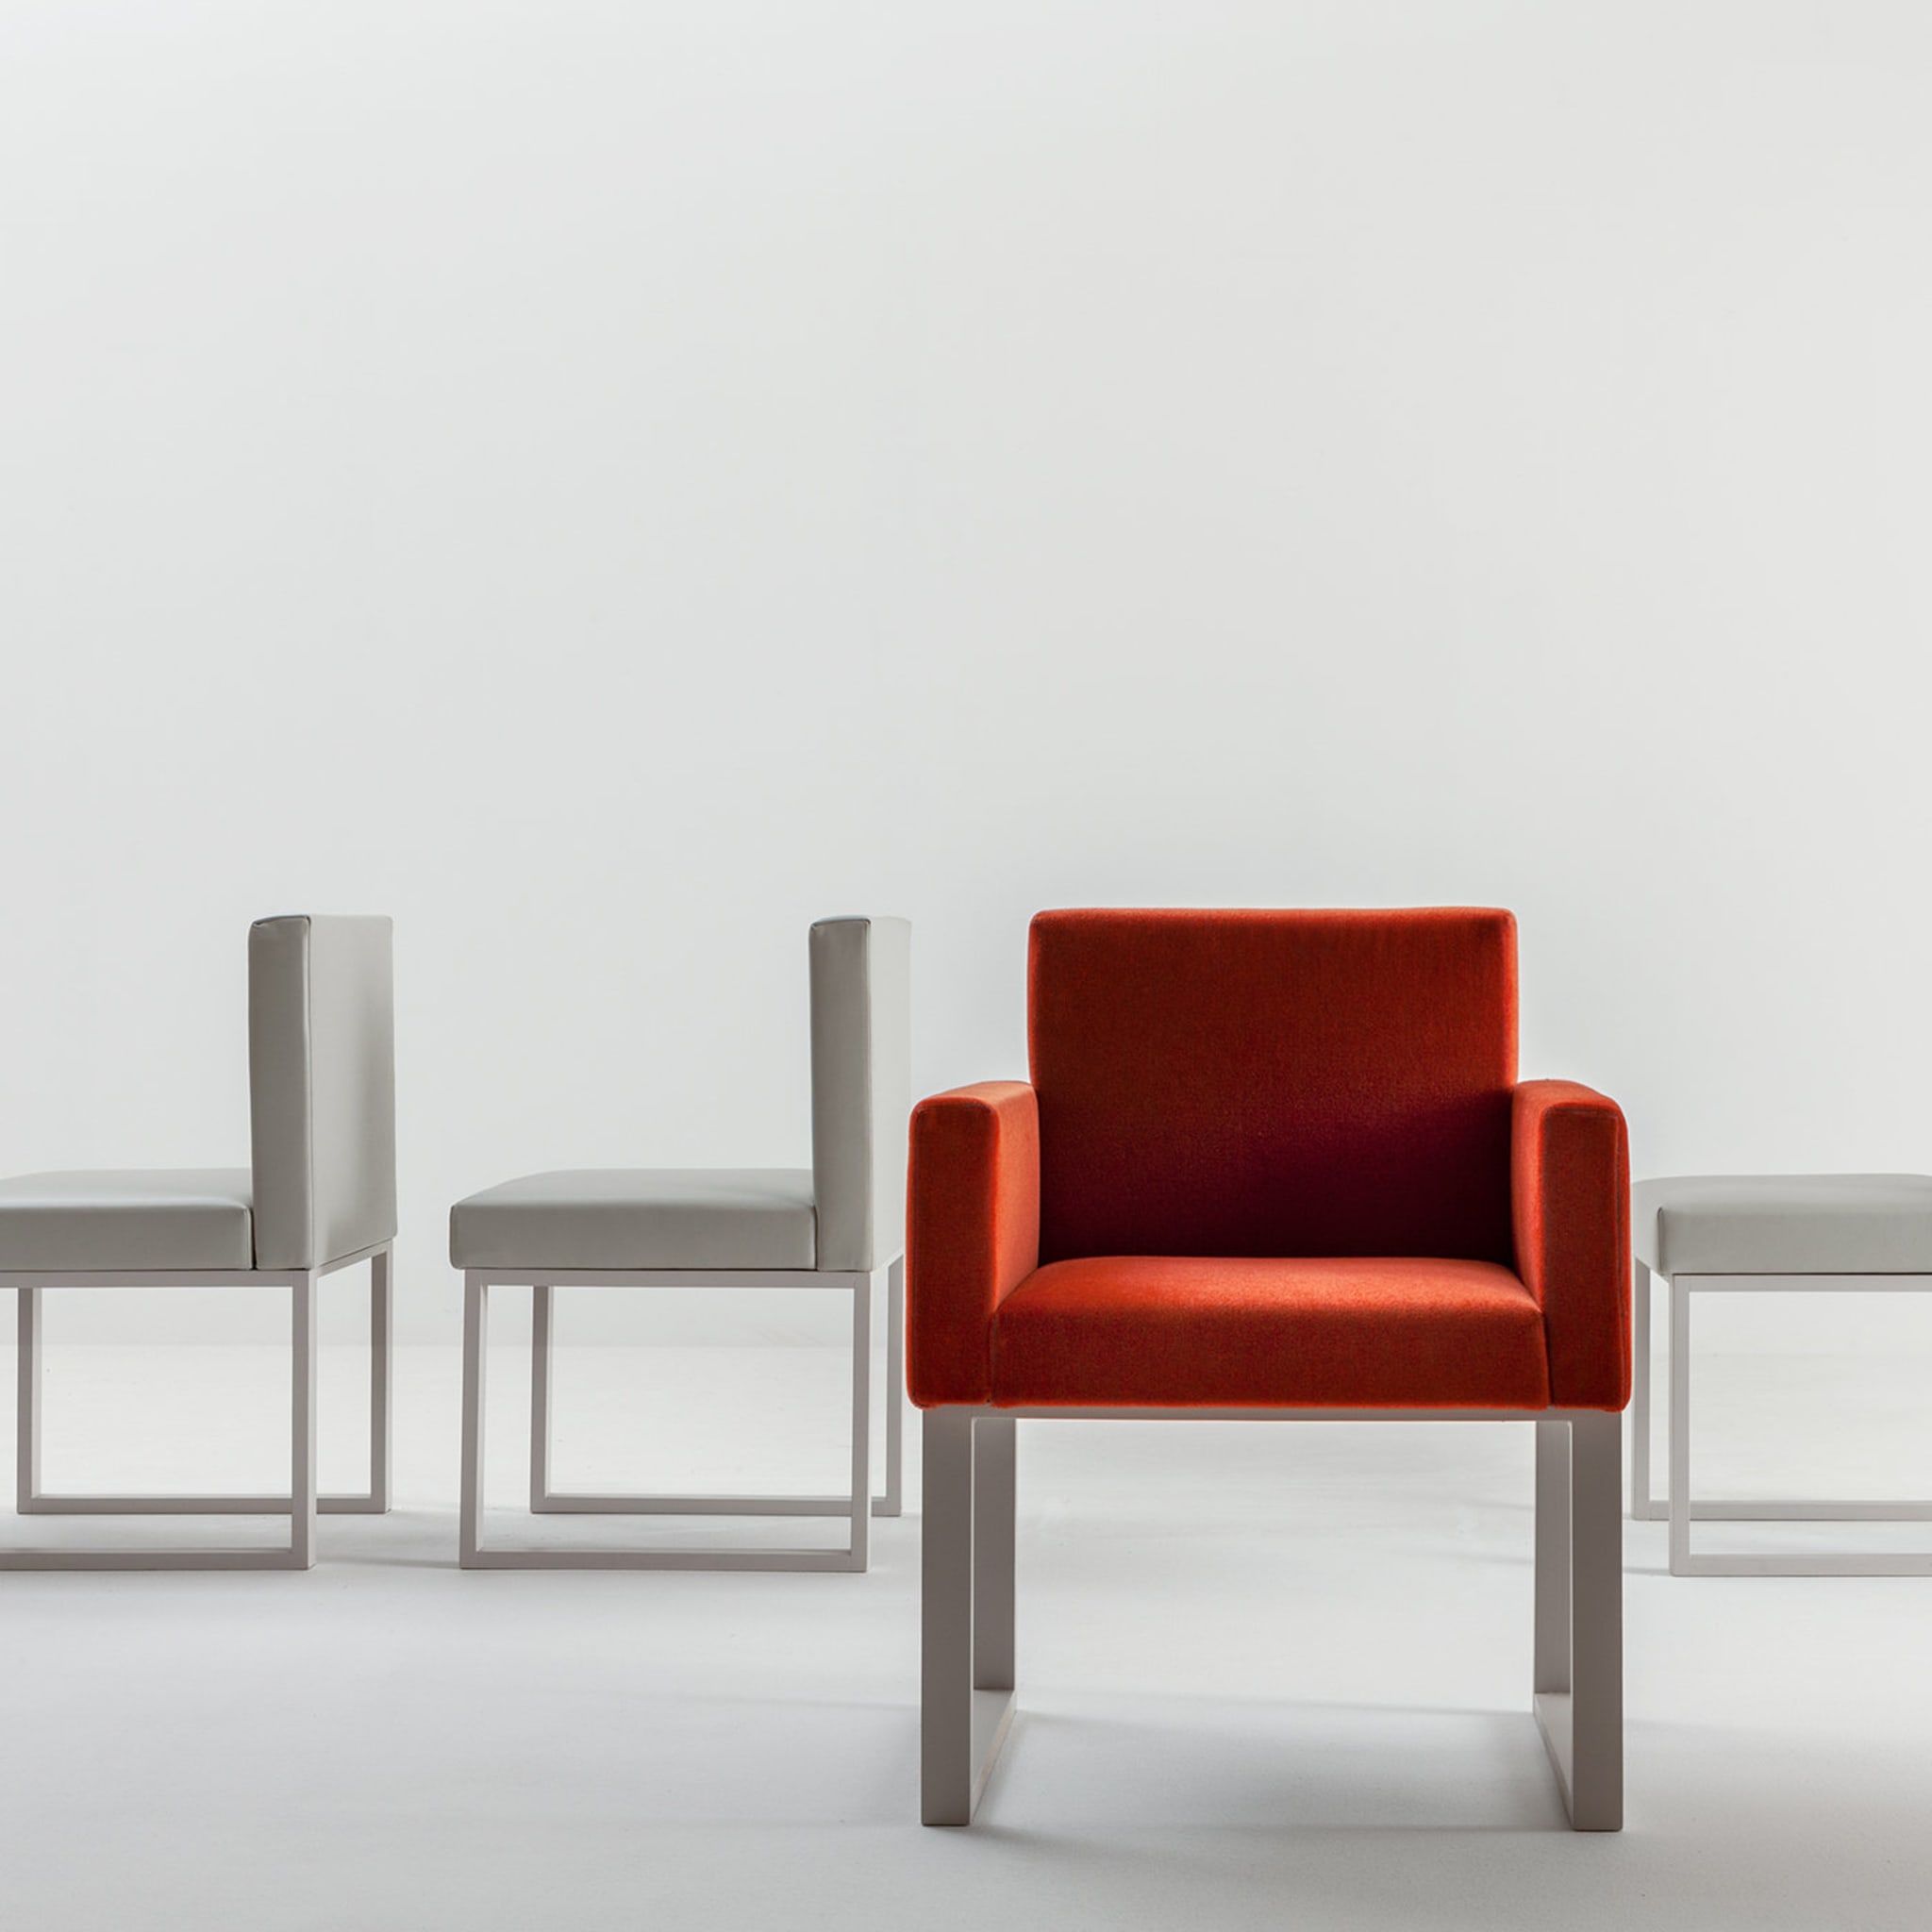 Maxima Chair by Bartoli Design - Alternative view 1